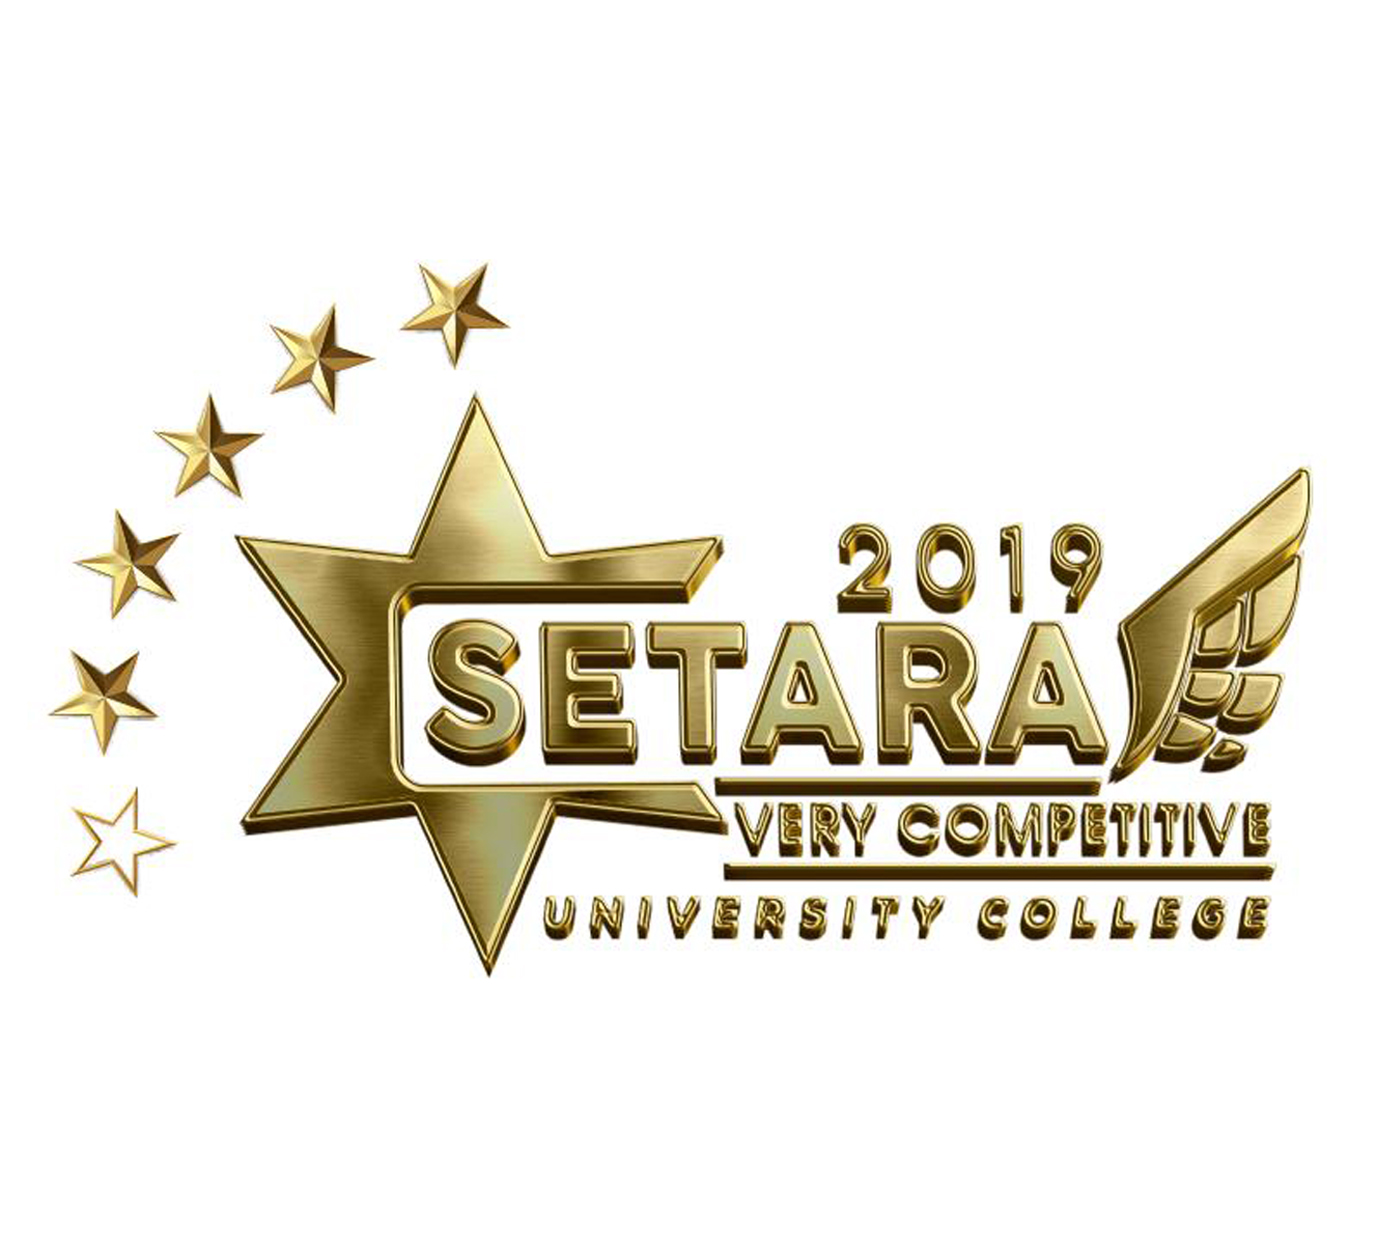 THE 5 STAR SETARA – 2017